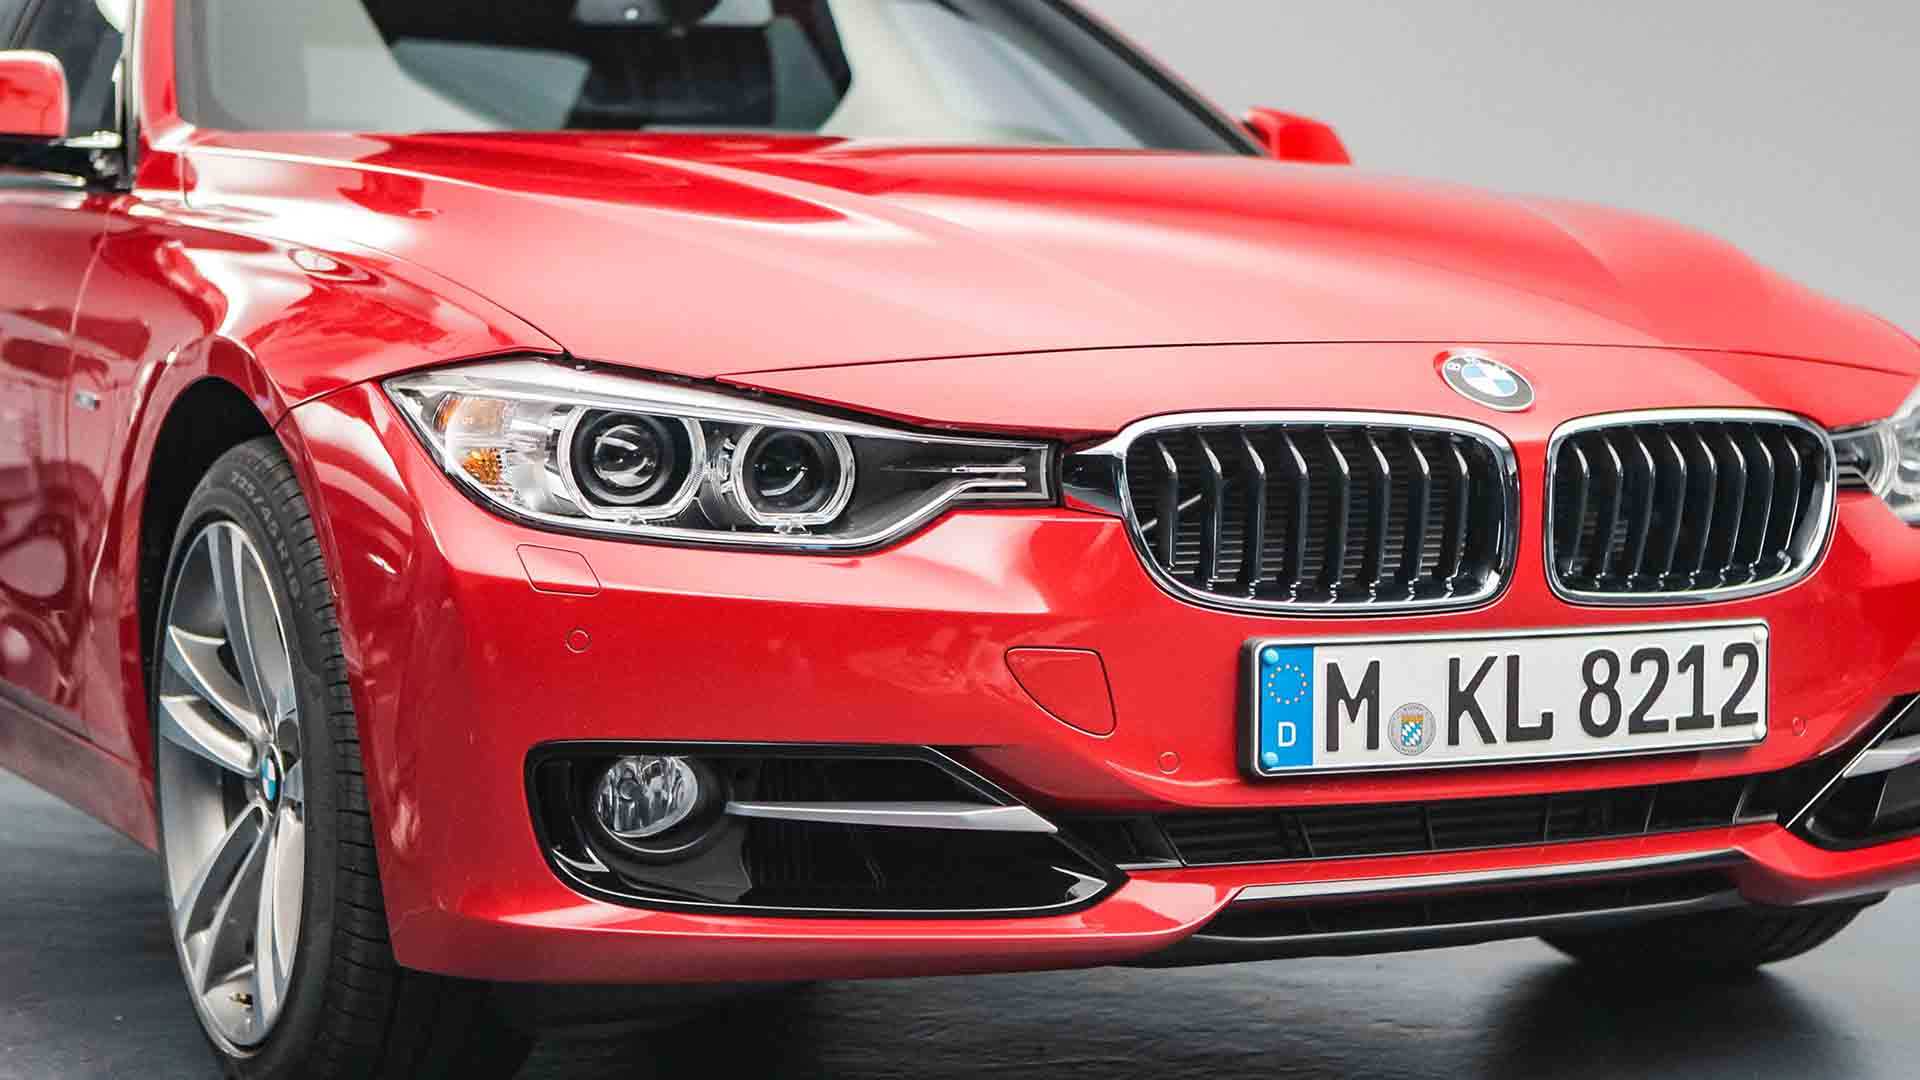 Das Bild zeigt die Motorhaube und das Kennzeichen eines roten BMW´s. Auf dem Kennzeichen liest man M-KL 8212. Das Bild dient als Making Of Bild für den Portfolioeintrag BMW F30 Zubehör von Panda Pictures.